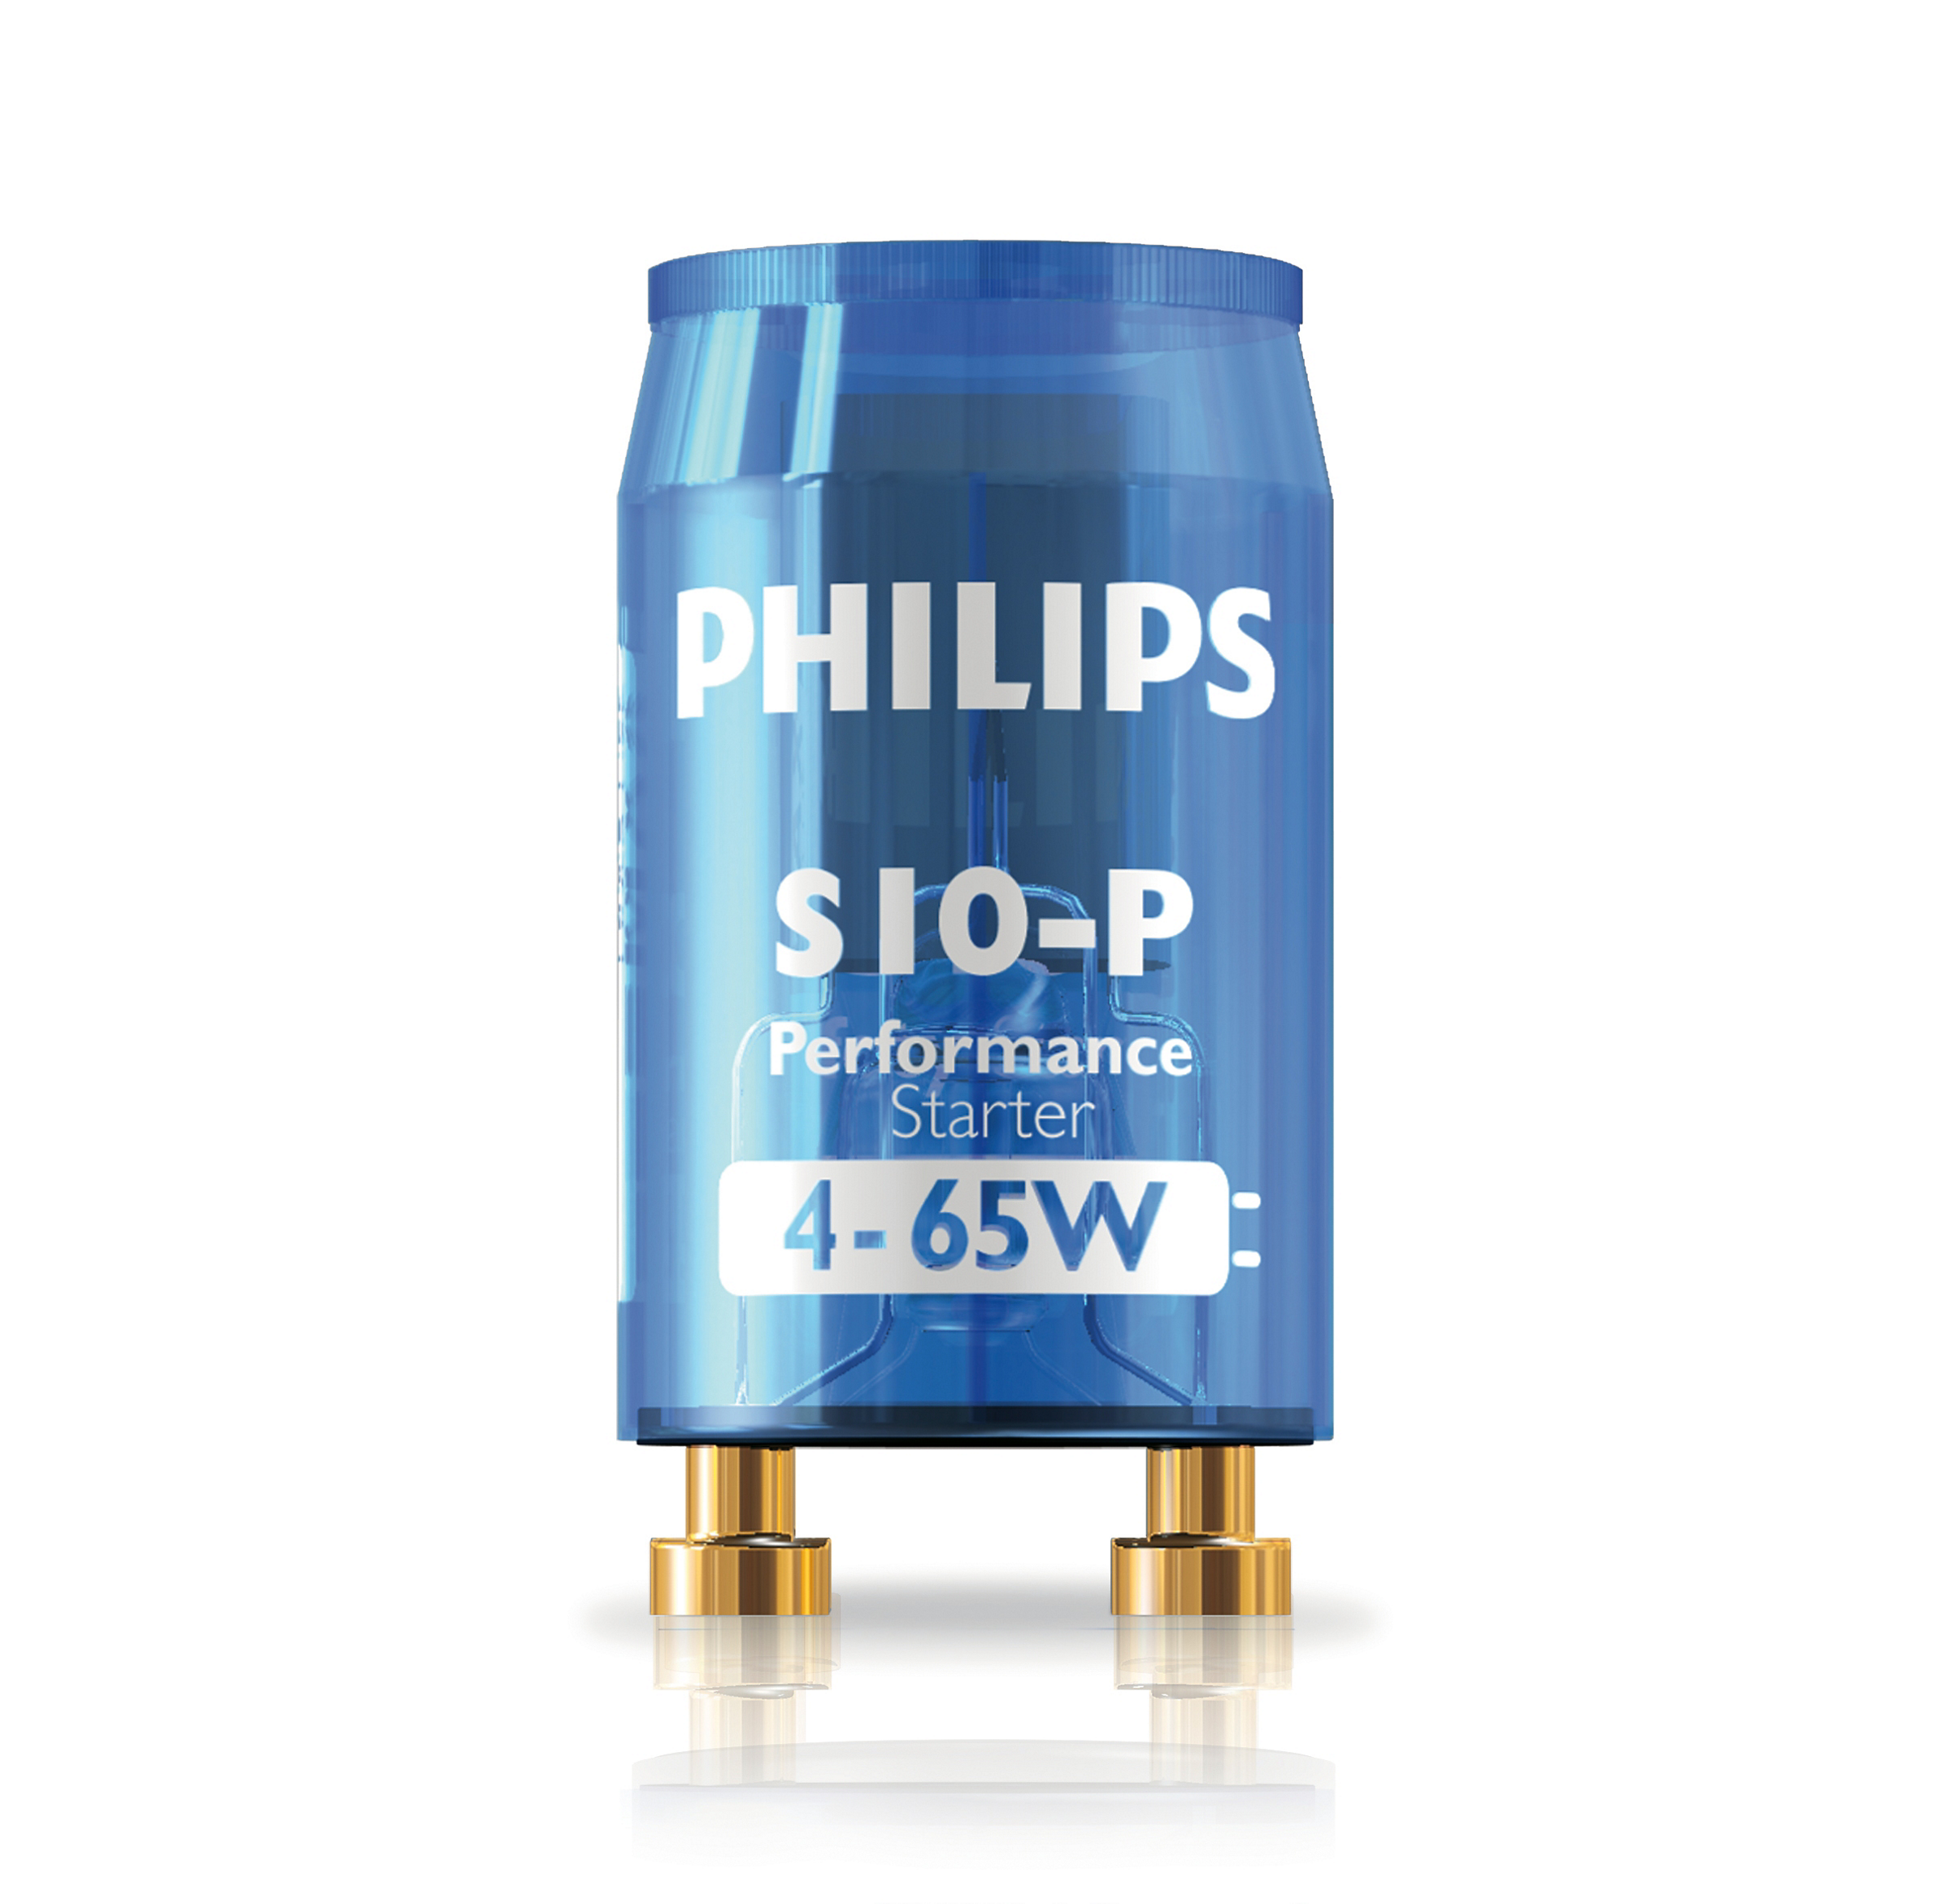 Philips Lighting Fluorescent Tube Starter Switch S16 70w 125W 220-240V Light 